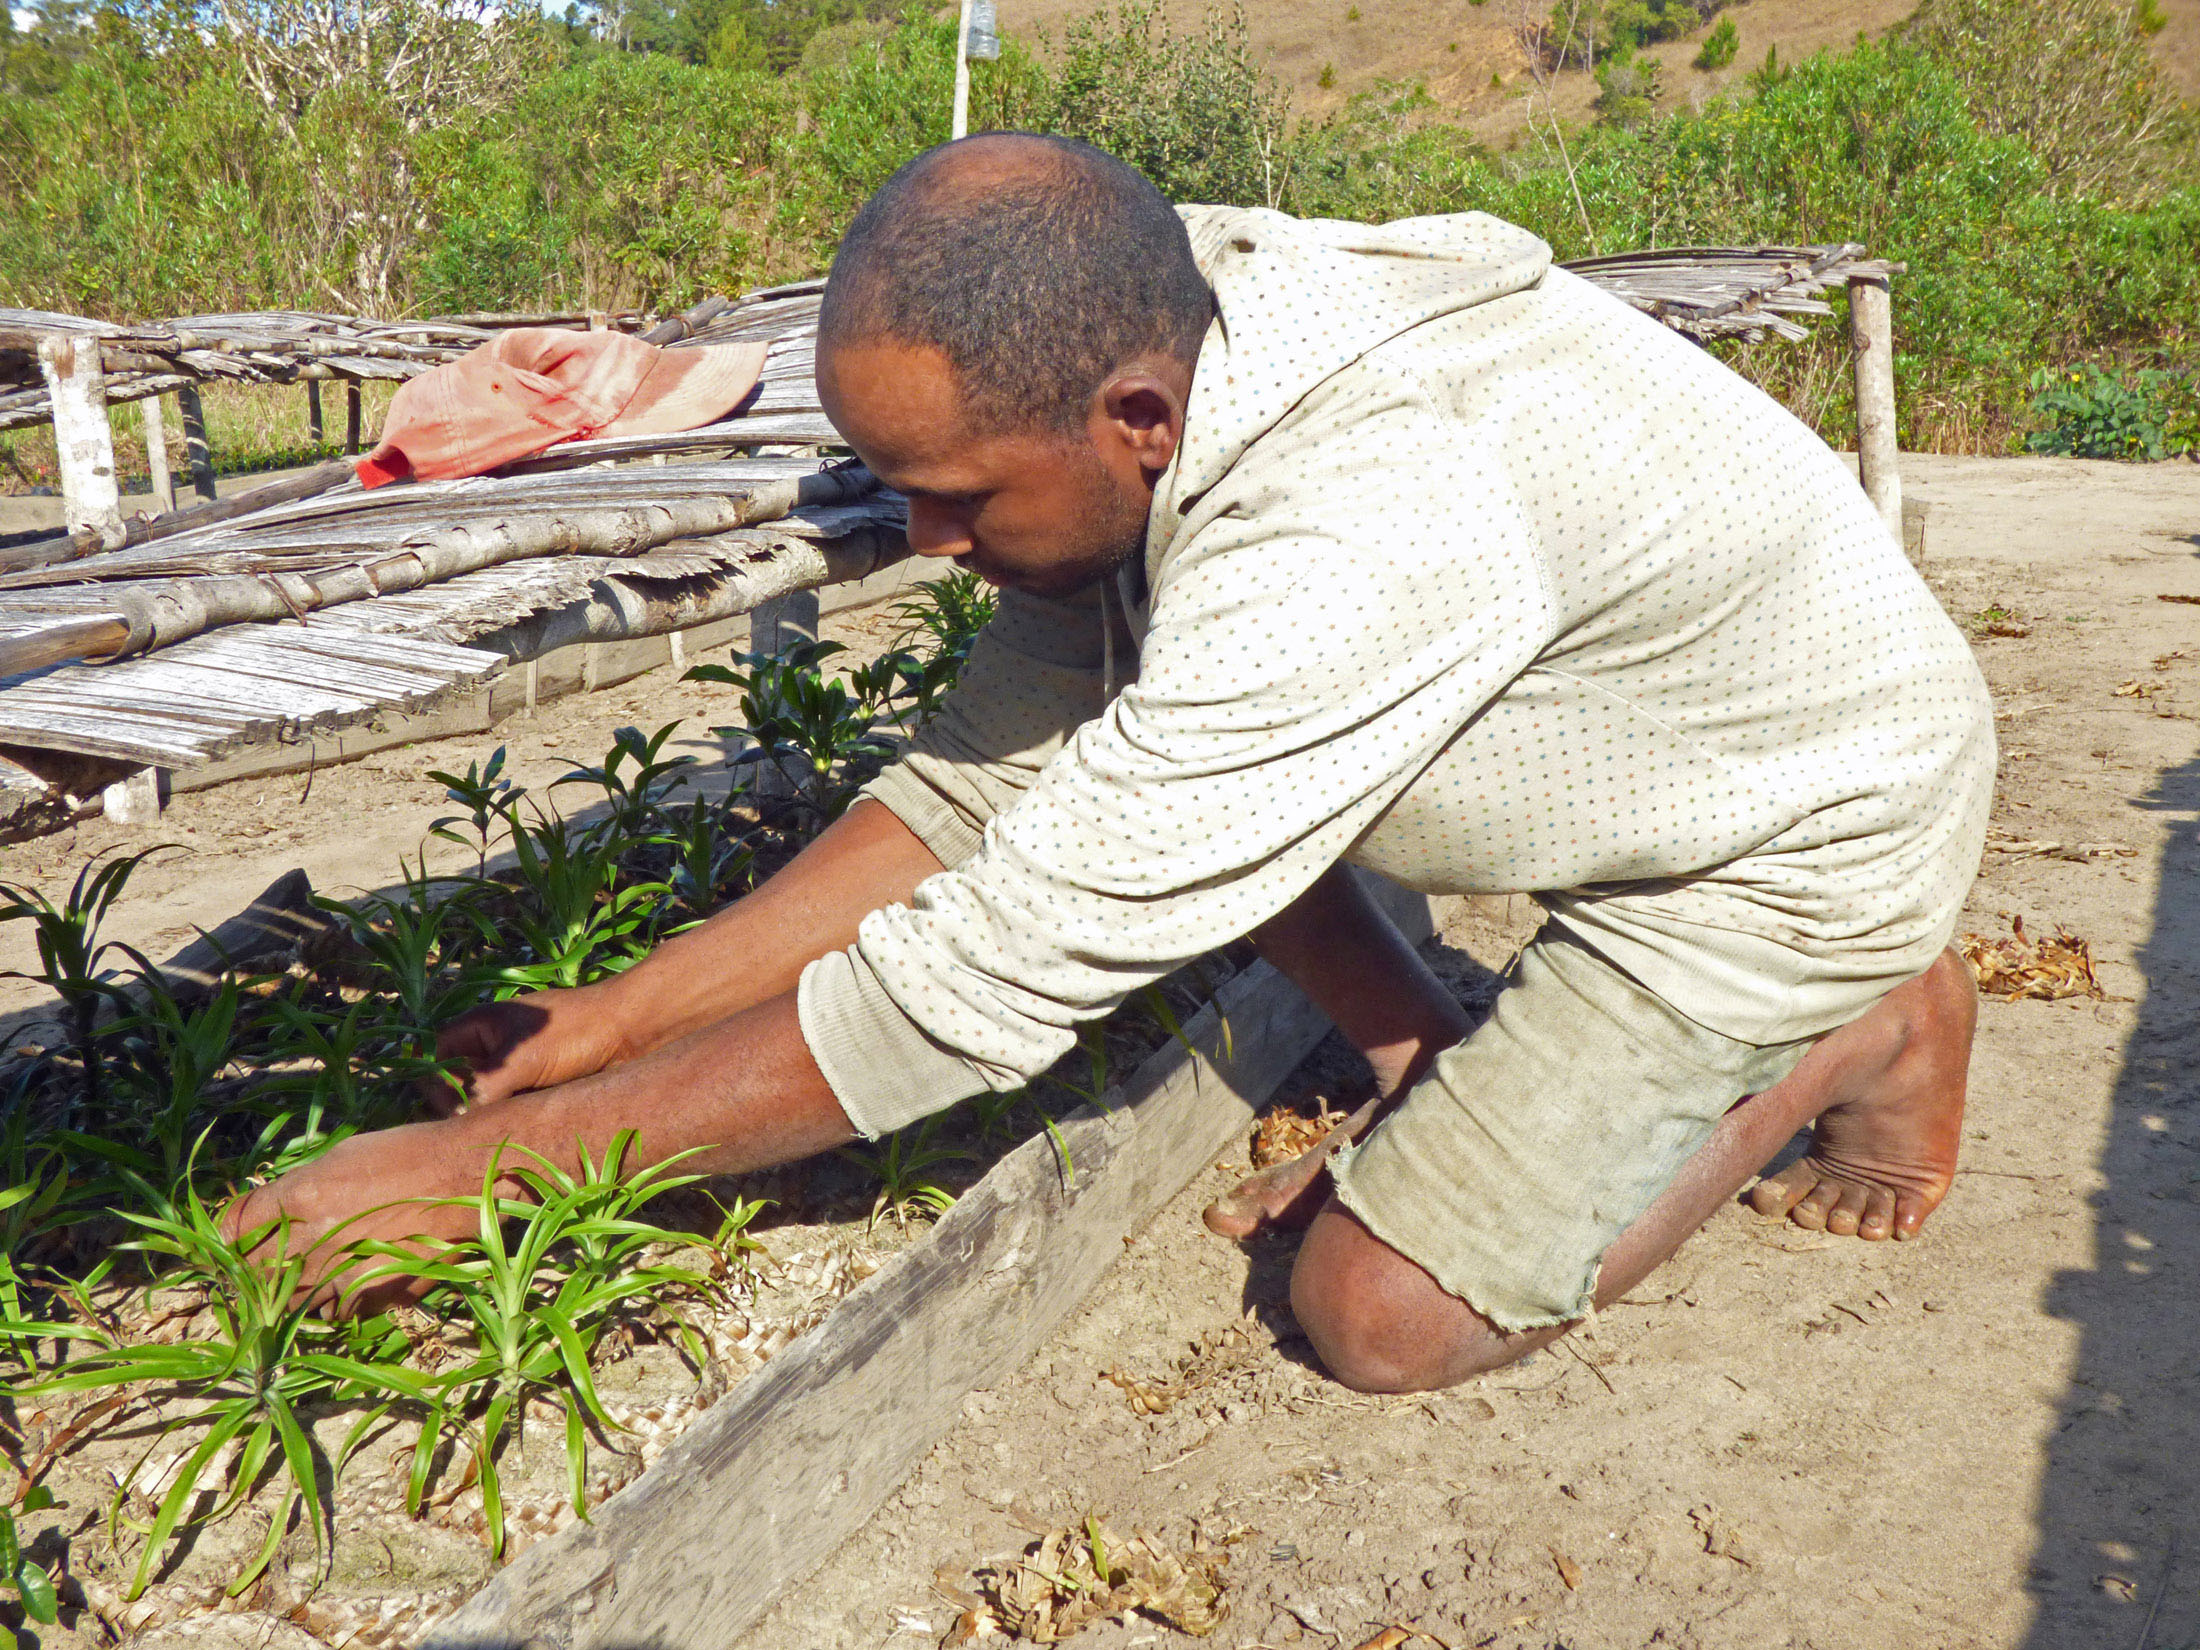 Tree Planting in Madagascar Rewilding Reforestation Habitat Regeneration